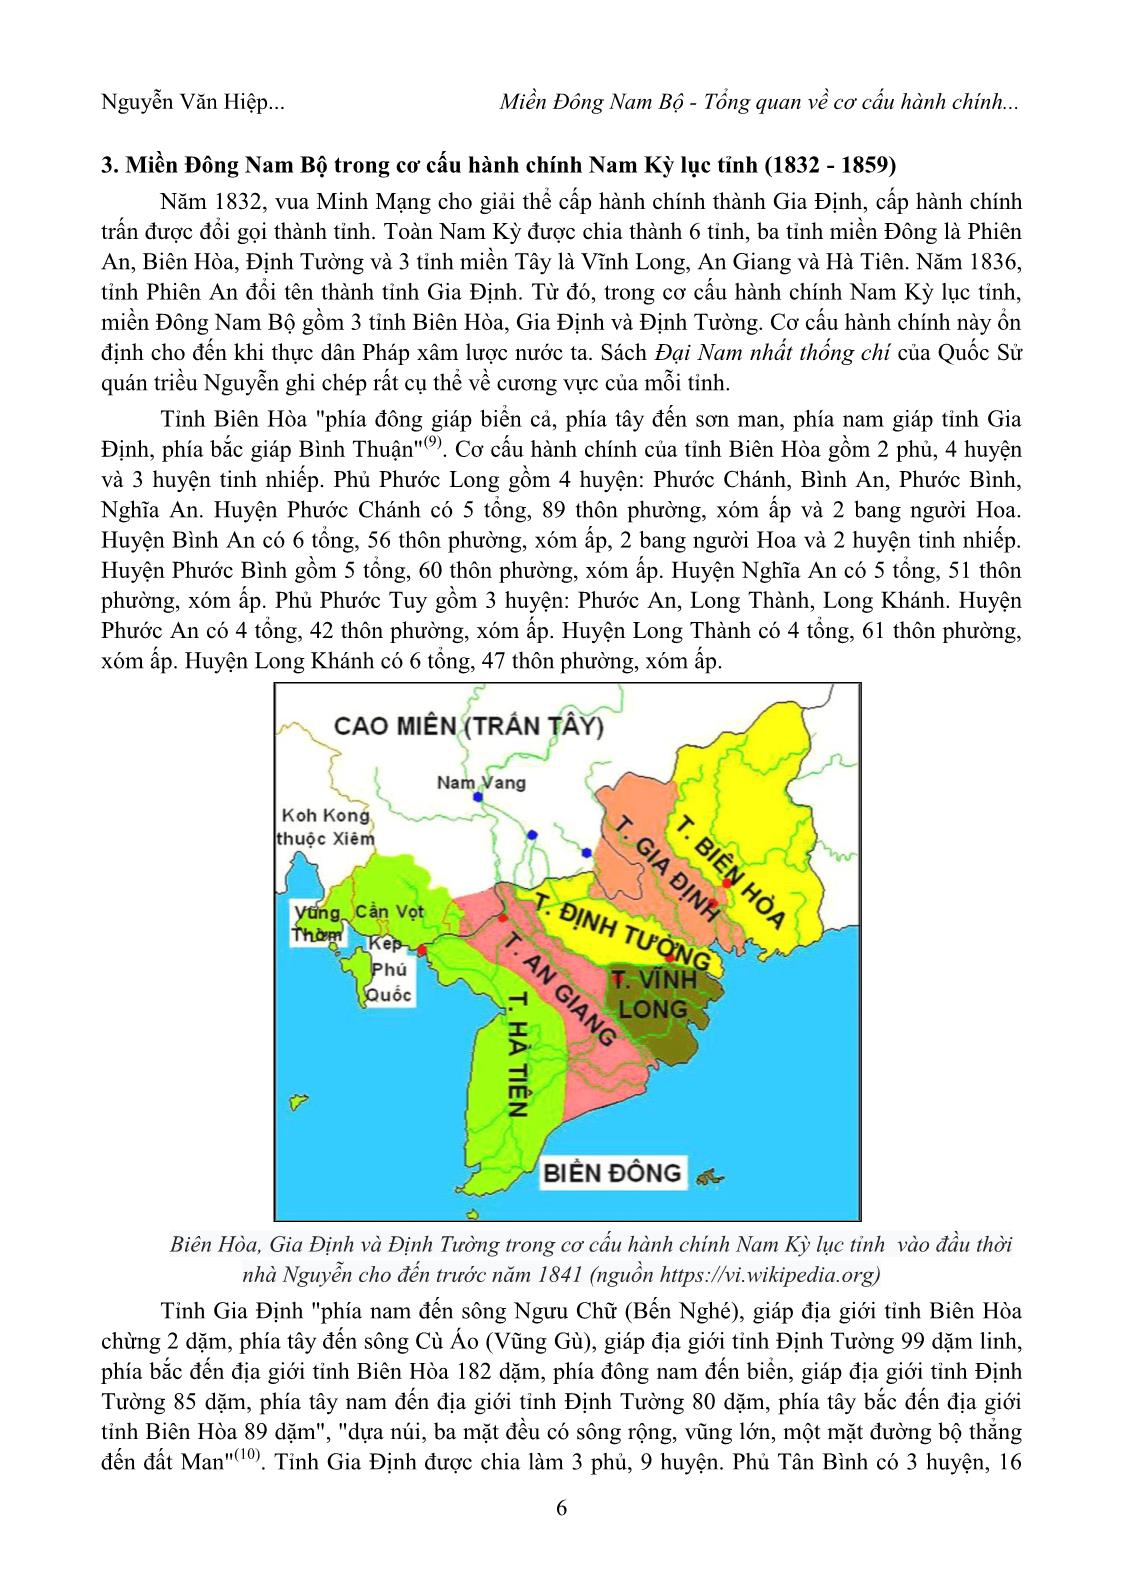 Miền Đông Nam Bộ – tổng quan về cơ cấu hành chính qua các thời kỳ lịch sử trang 4